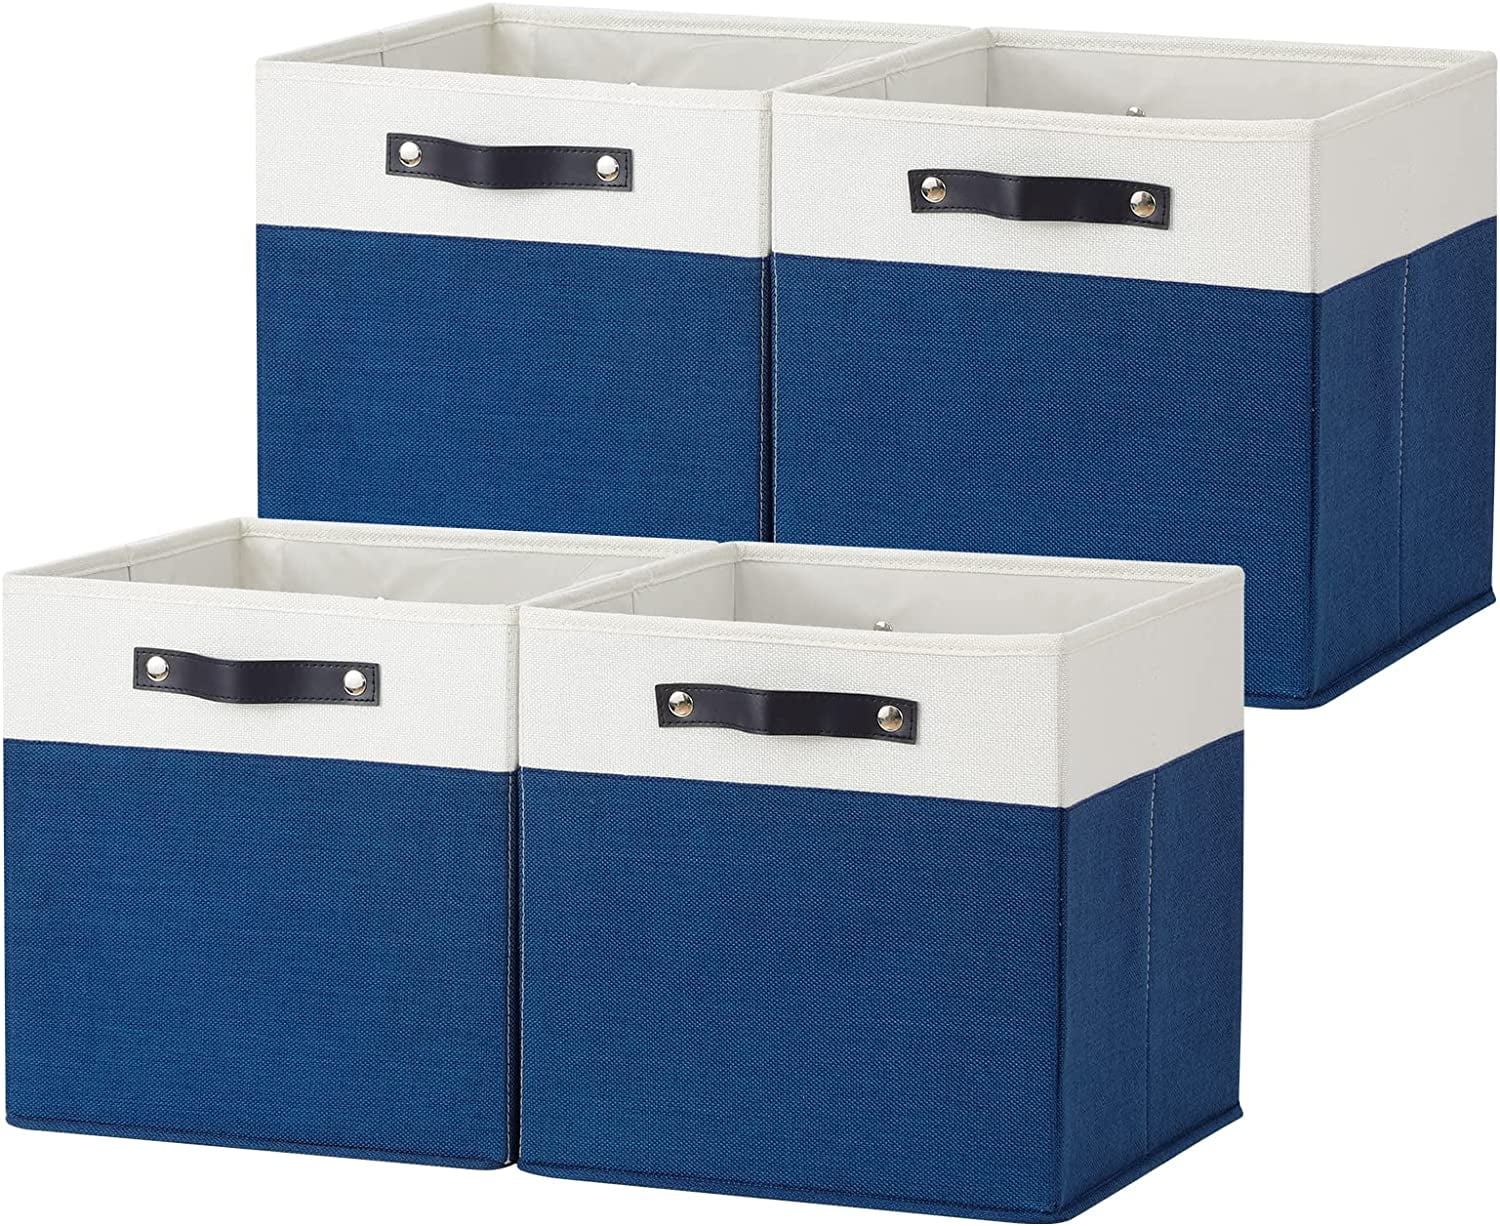 Cube Storage Bins 13x13, Cubby Storage Bins for Shelf Closet Nursery ...